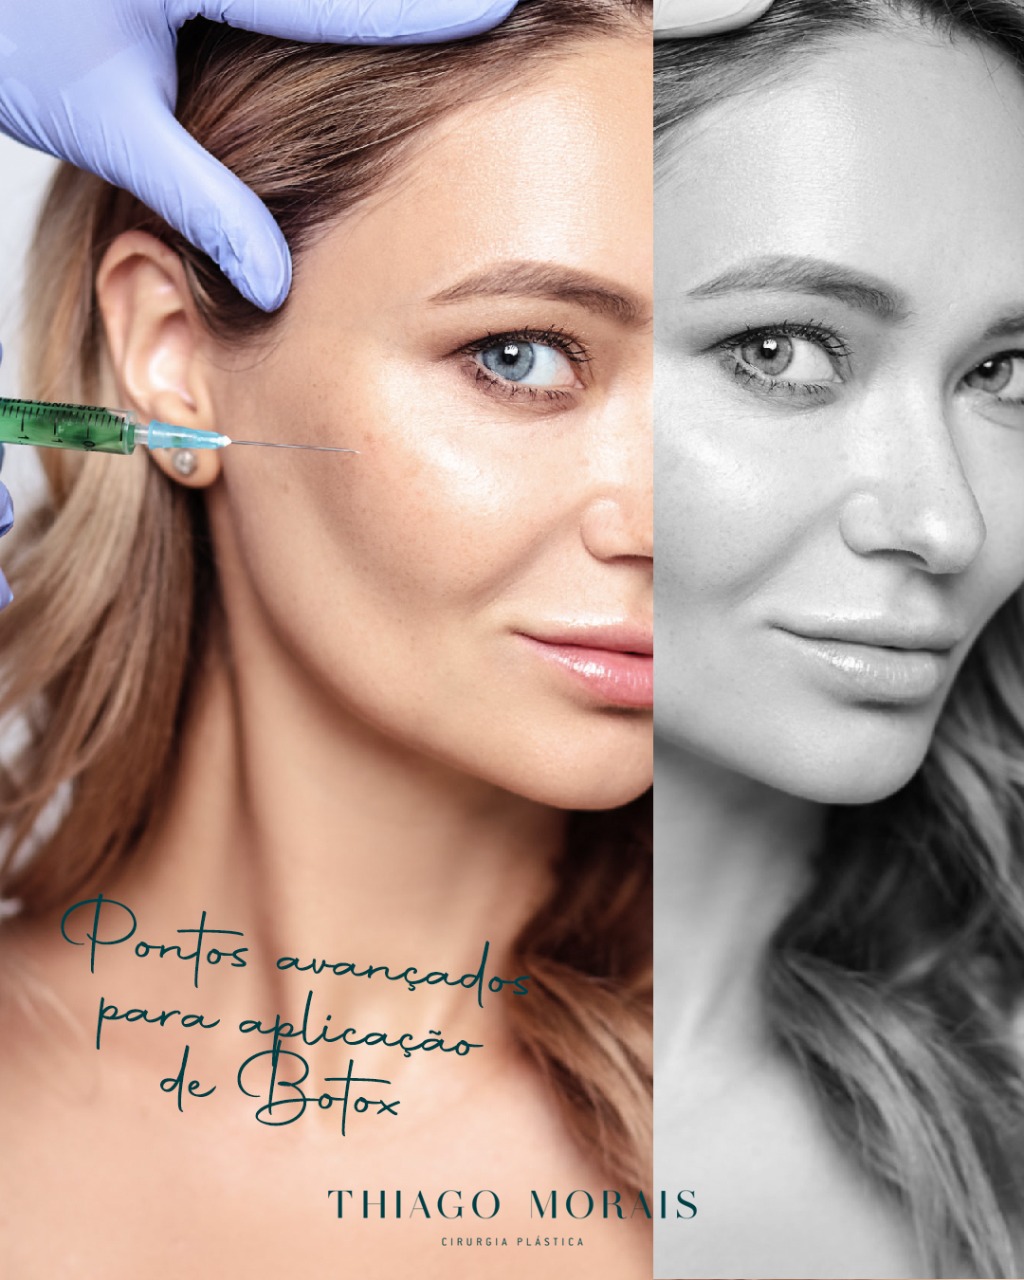 Botox Antes e Depois - Como ter um bom resultado